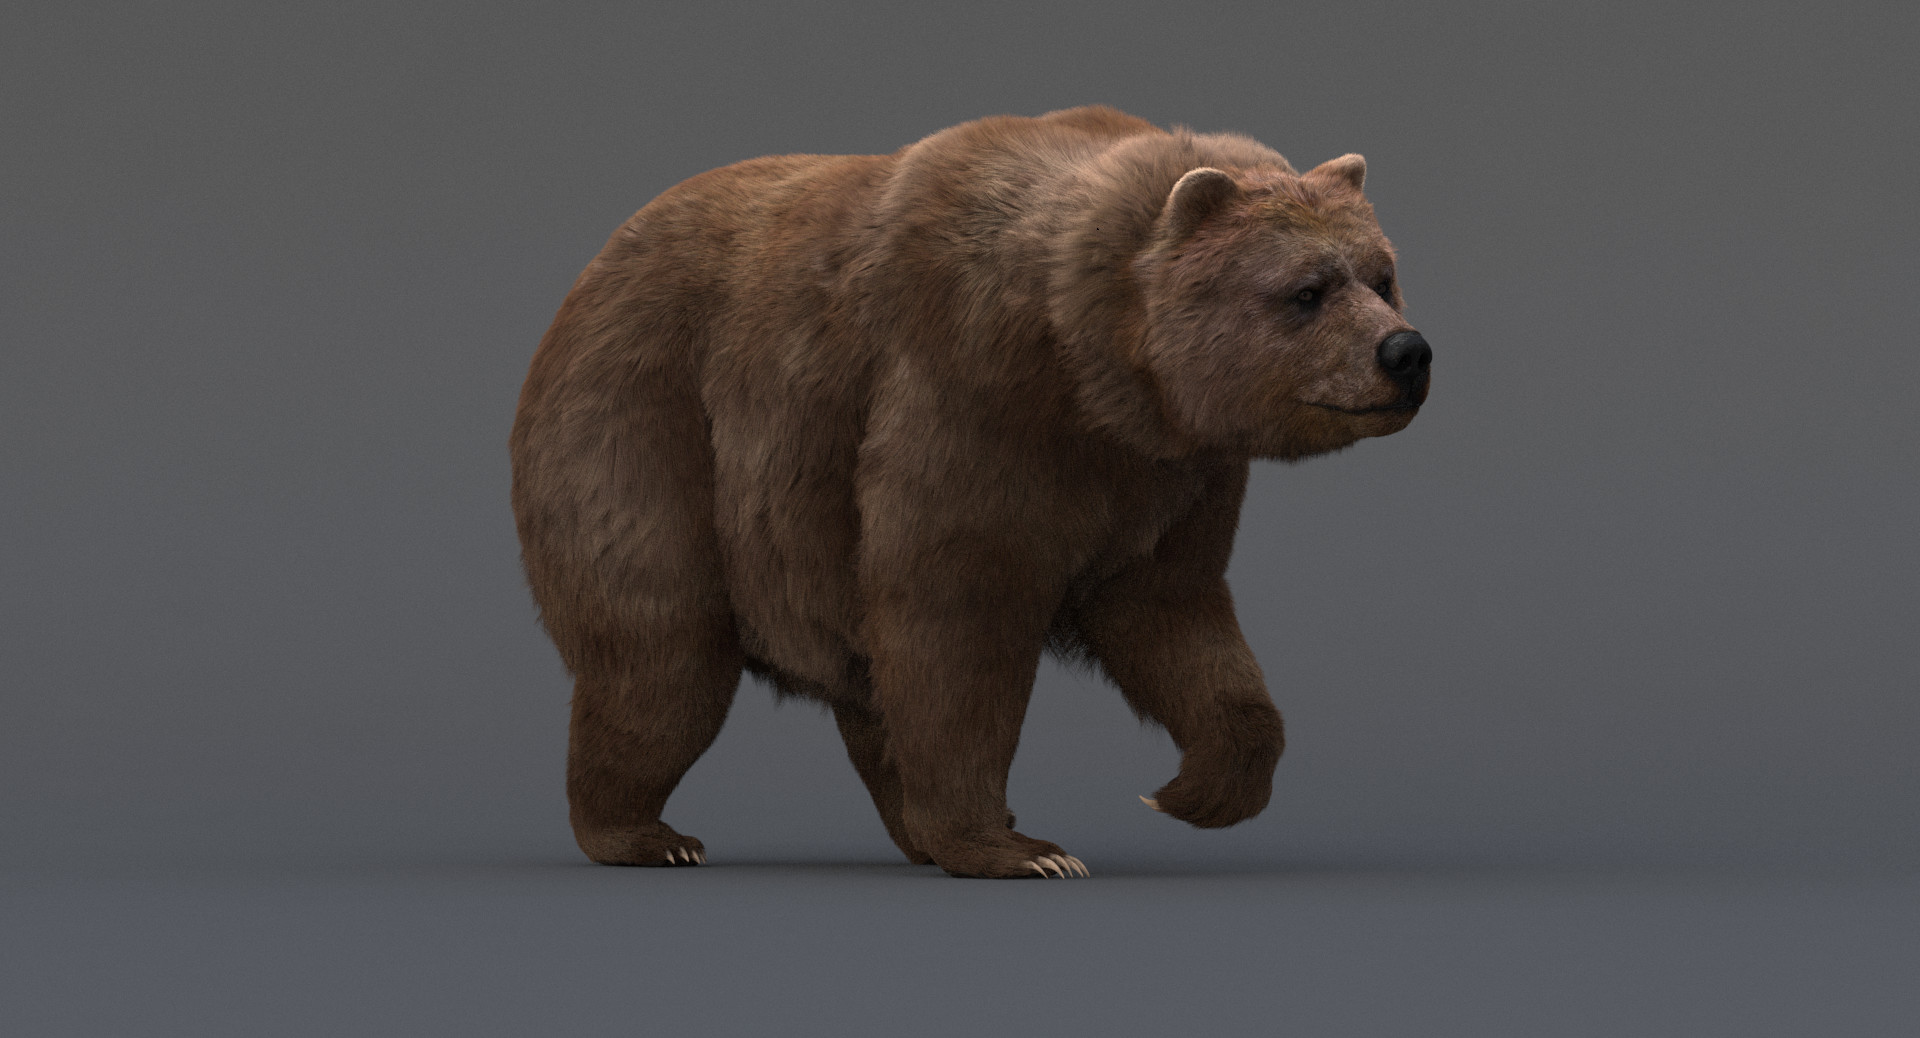 ArtStation - Bear Mini Fridge Model